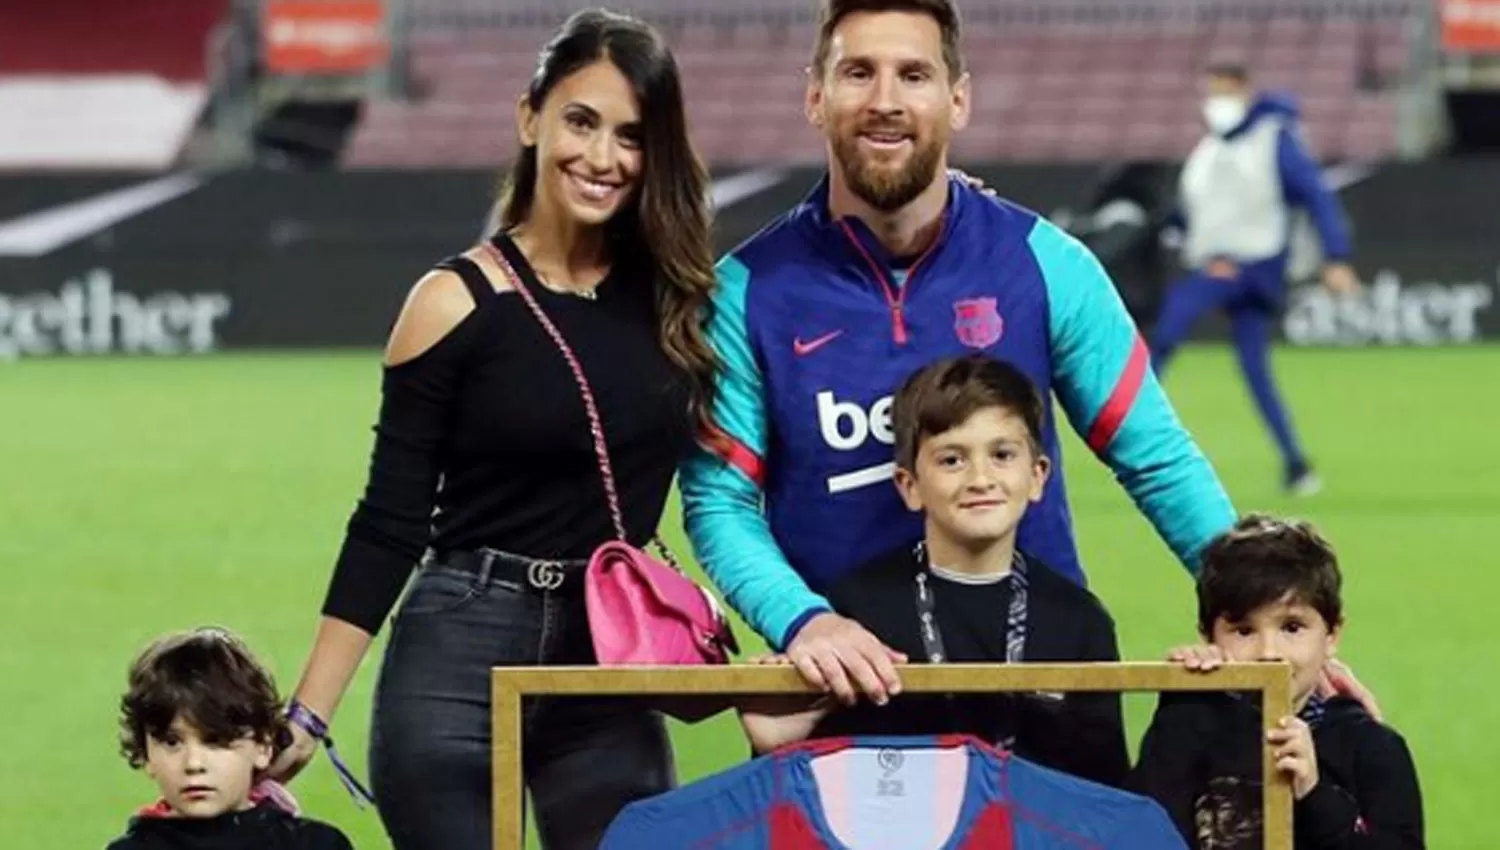 UNA VIDA. Messi y su familia celebrando en el Camp Nou uno de los tantos récords del rosarino en el club.